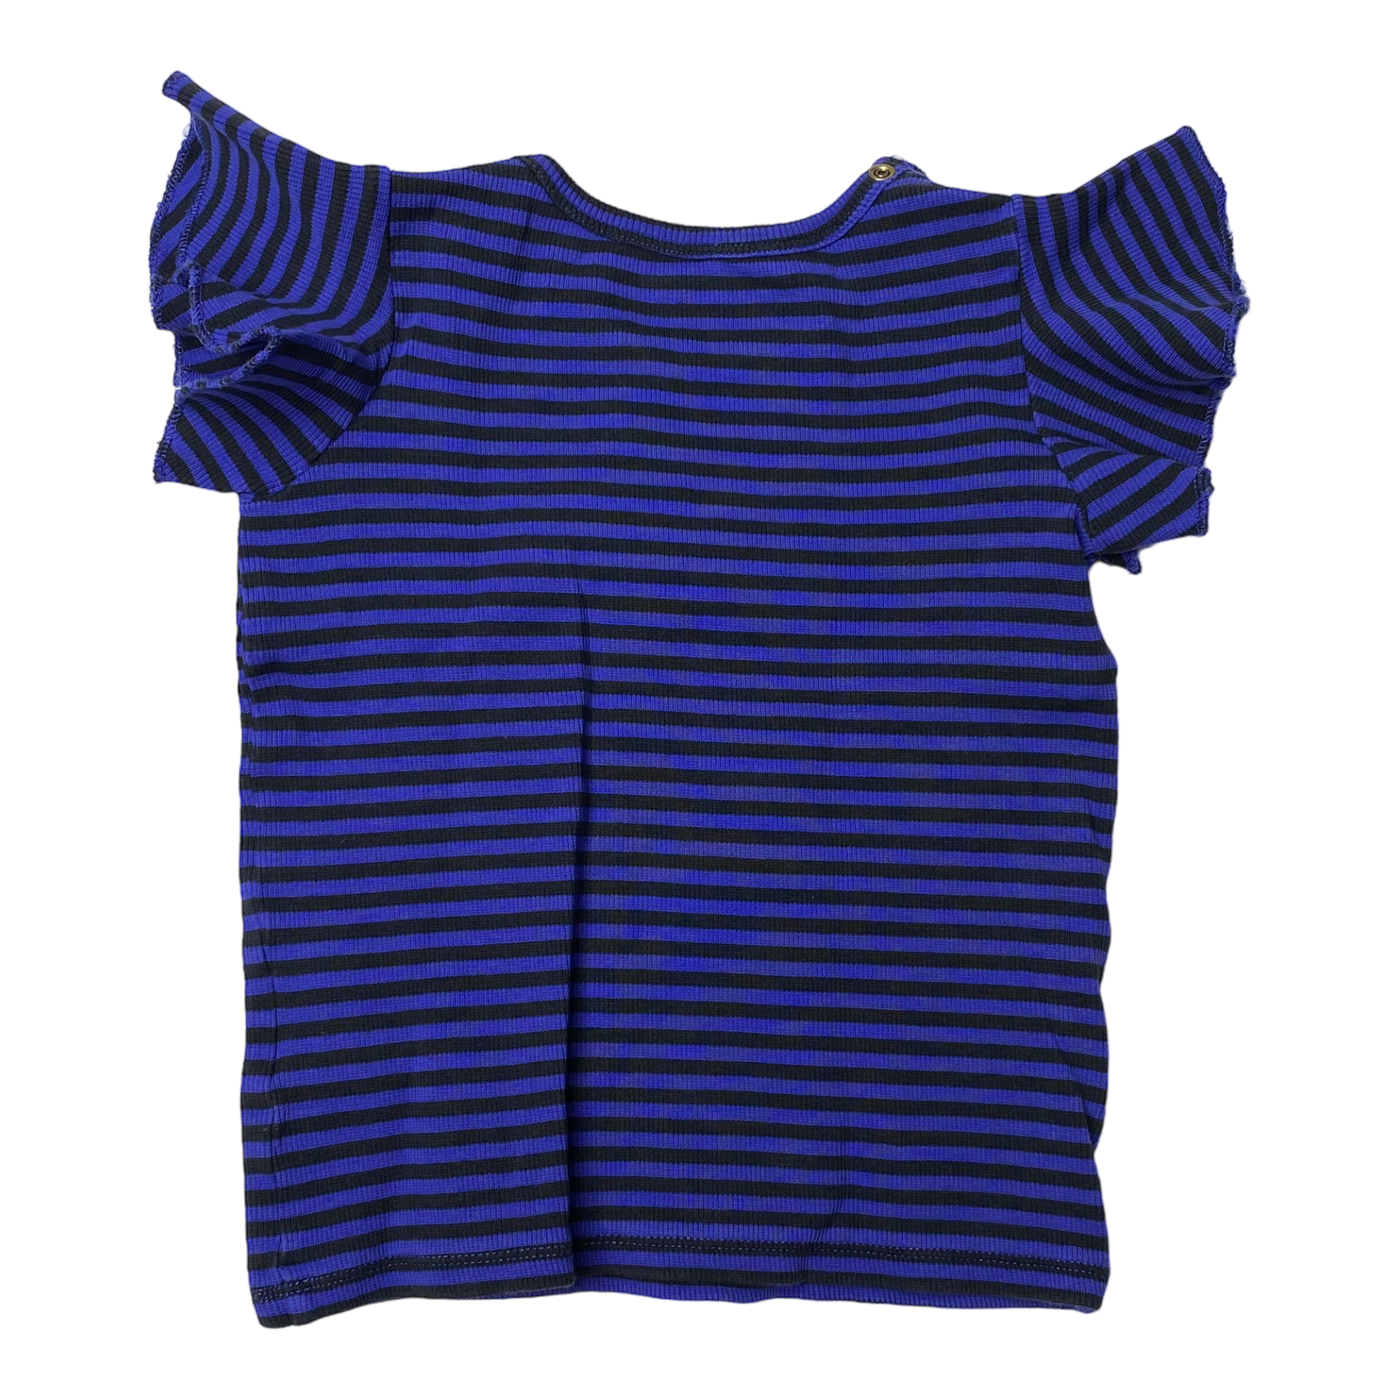 Mini Rodini frill t-shirt, stripes | 92/98cm